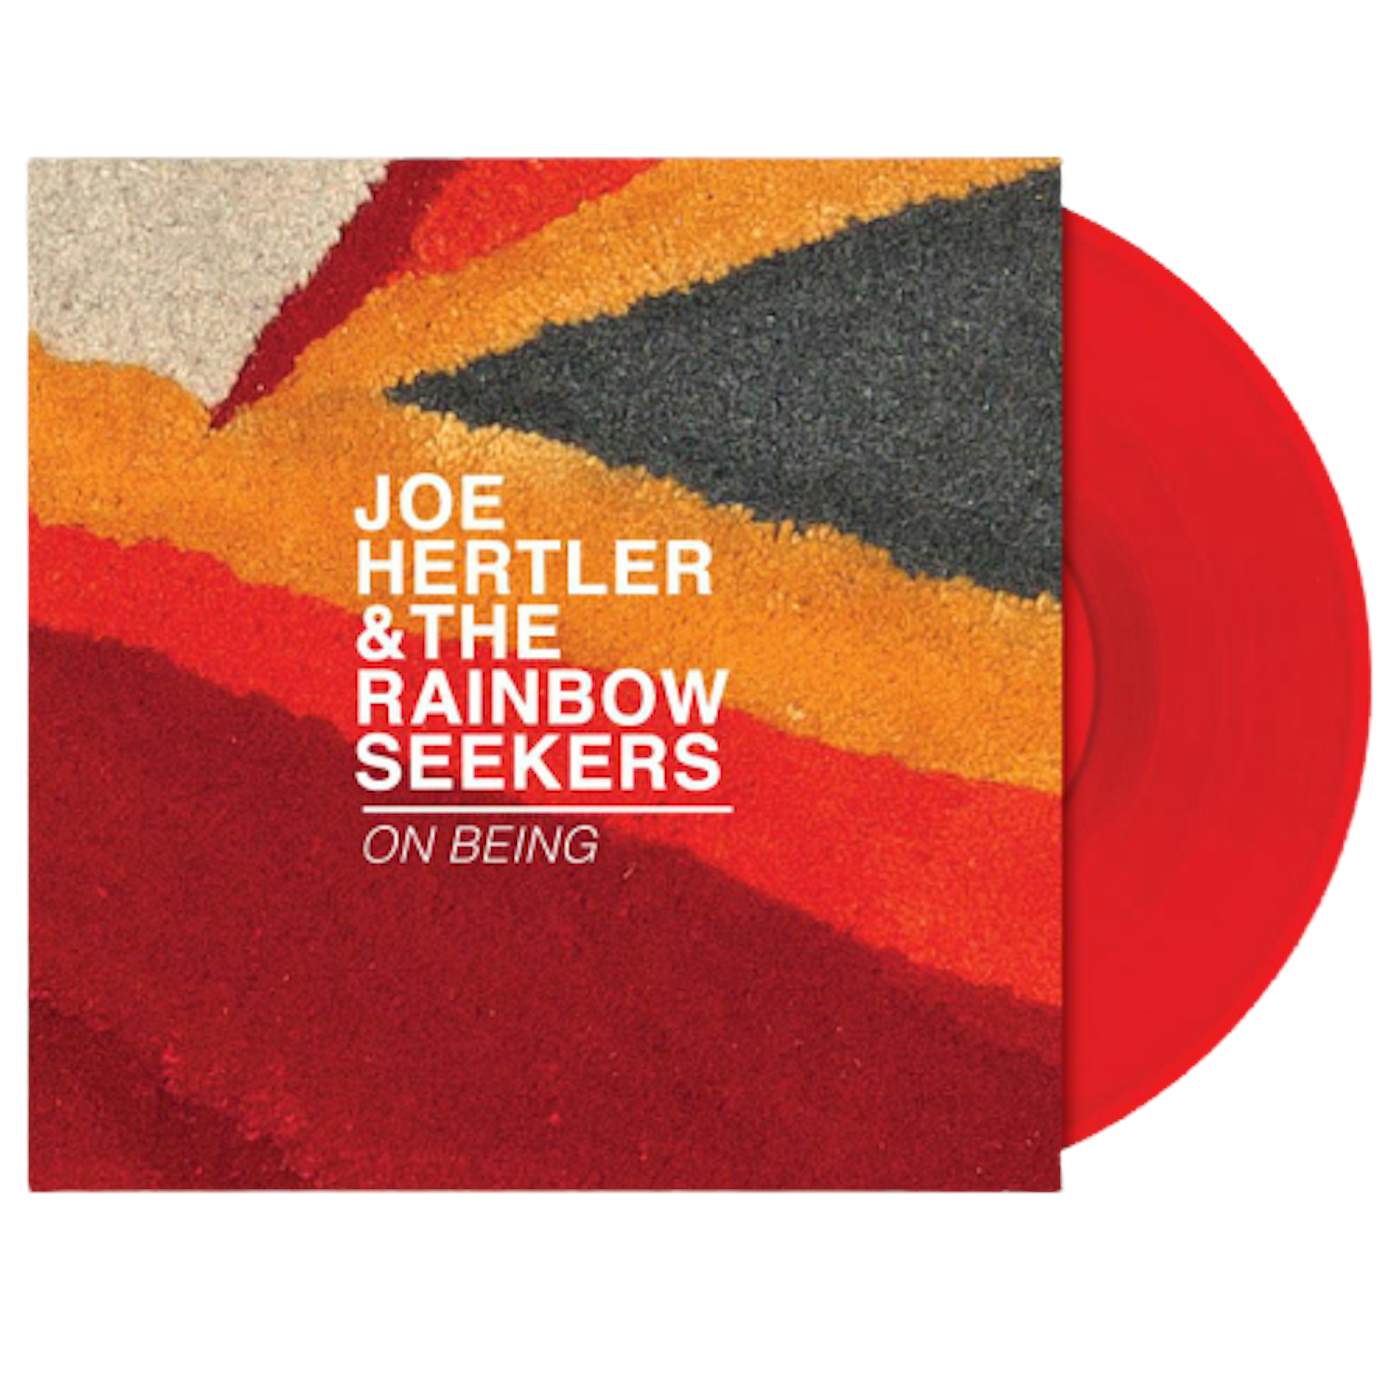 Joe Hertler & The Rainbow Seekers On Being (Vinyl Record)